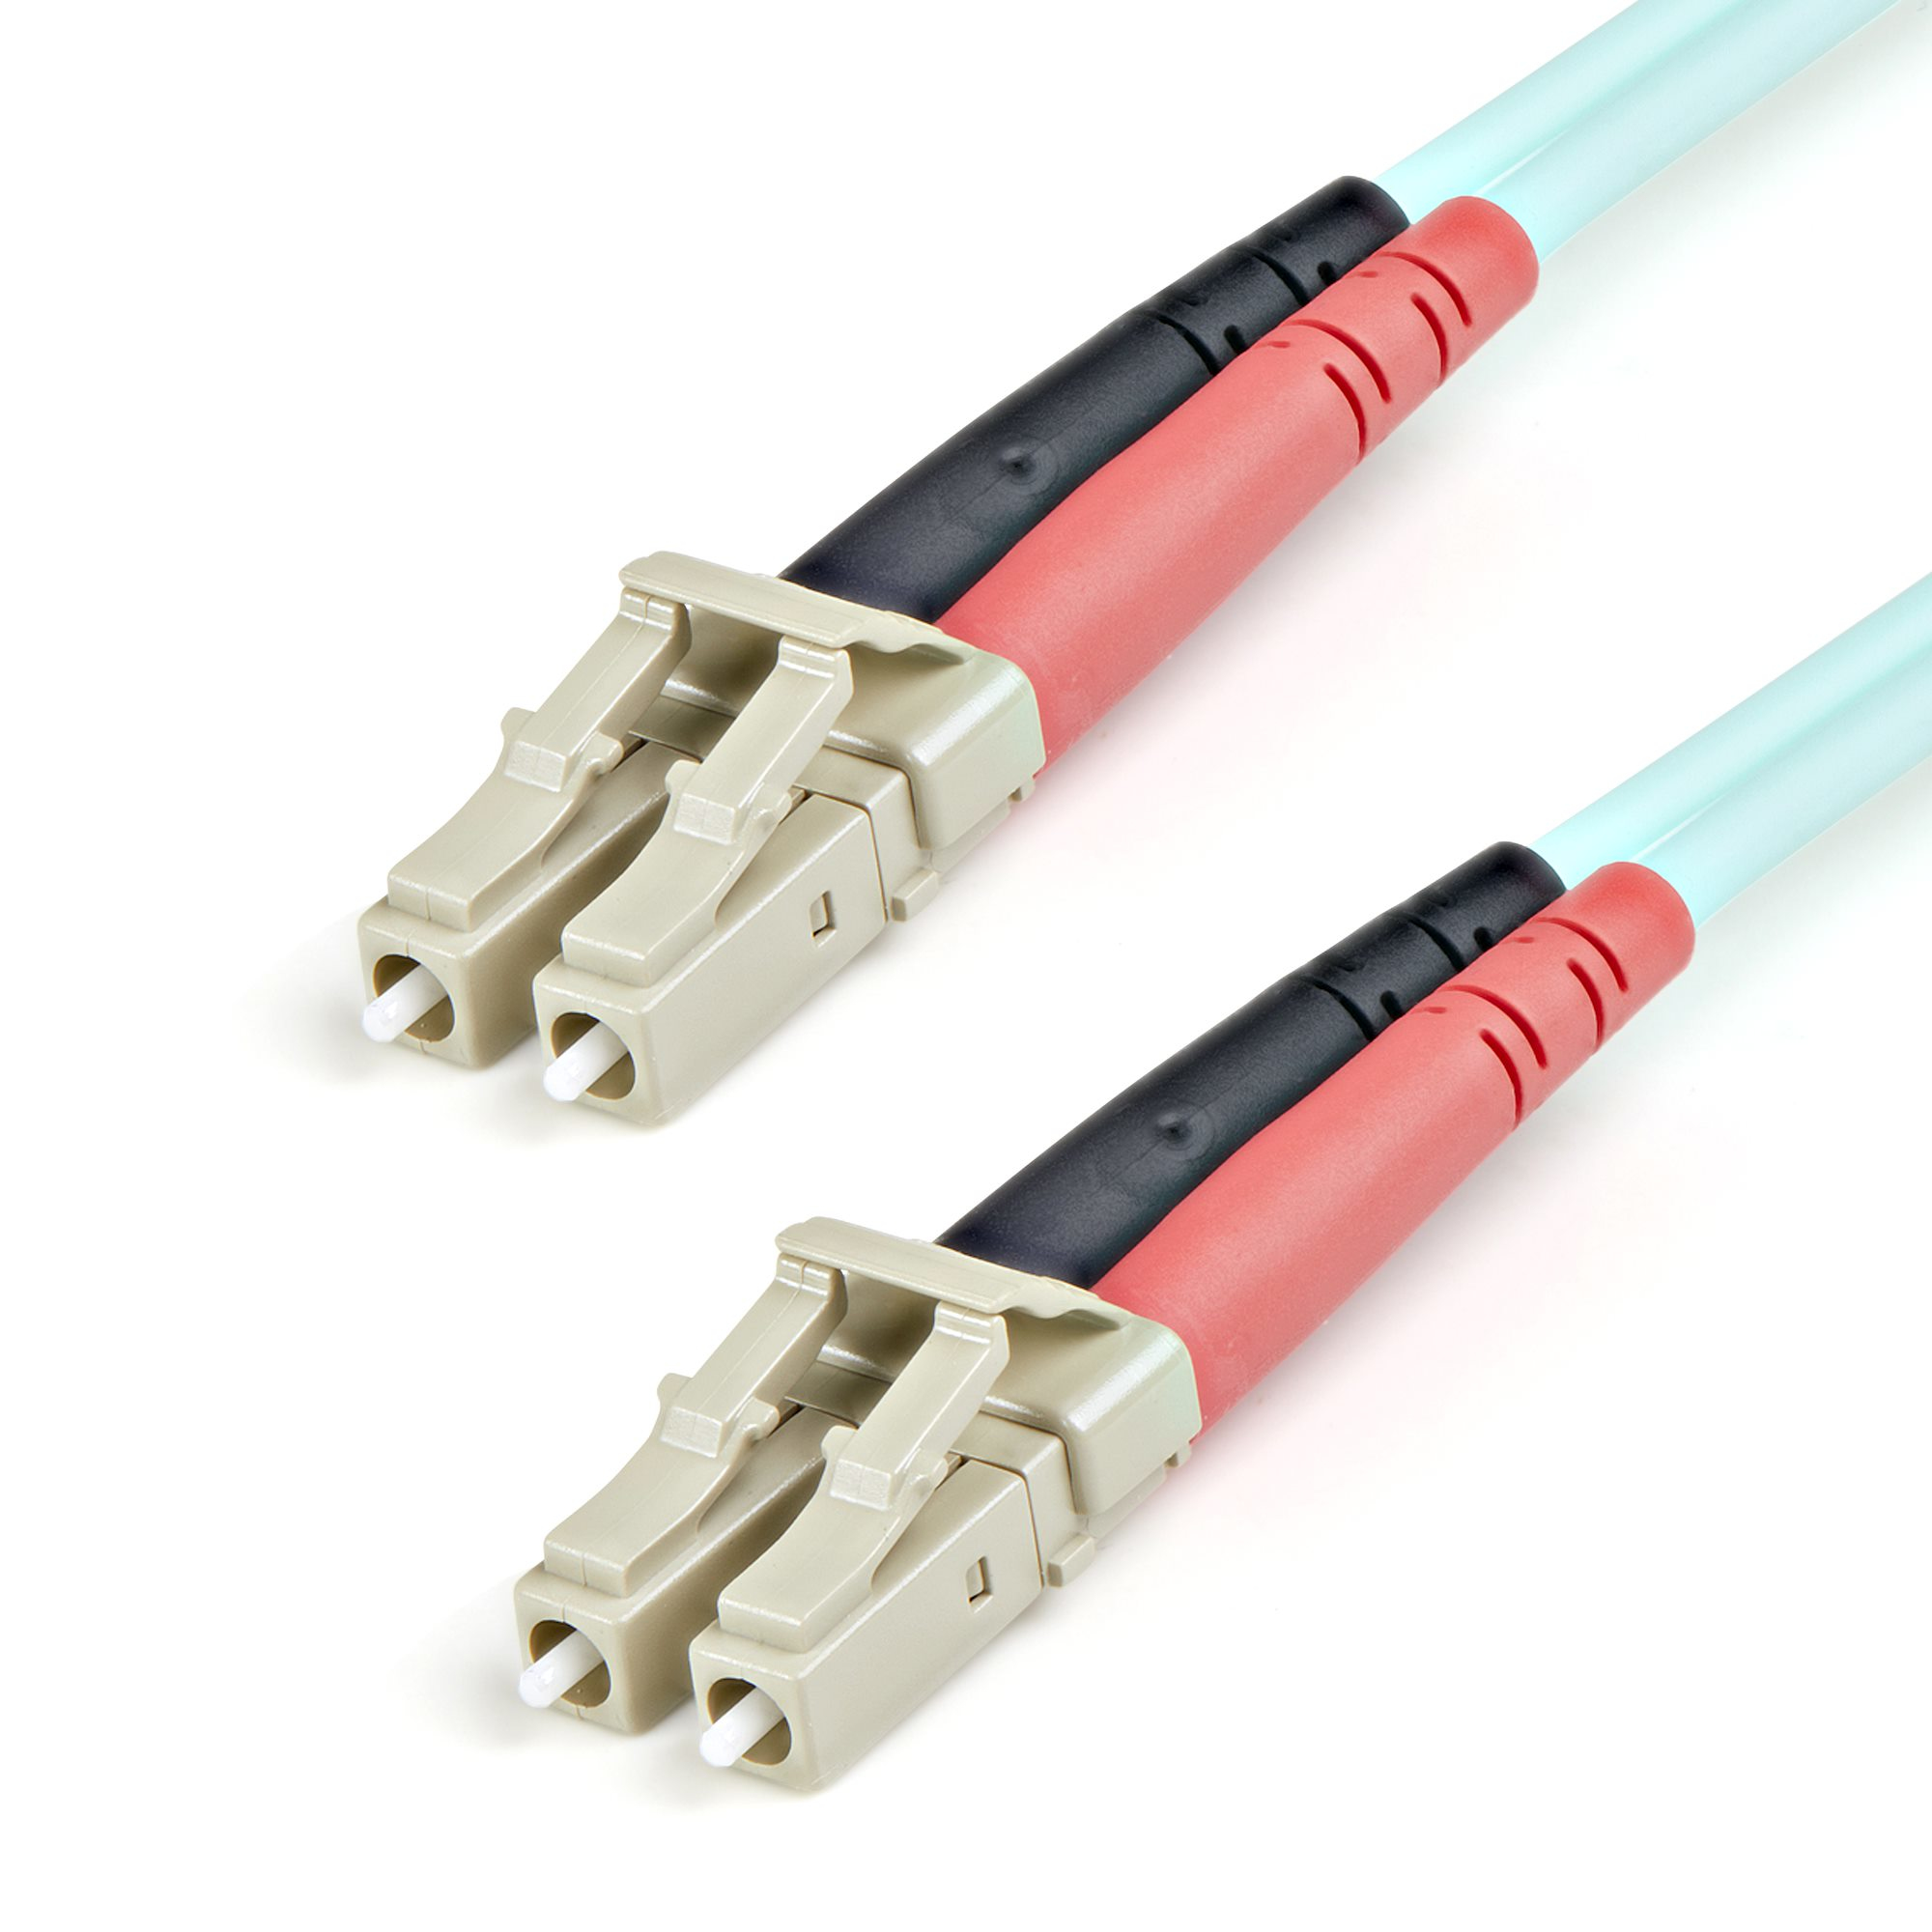 StarTech.com Fiber Optic Cable - 10 Gb Aqua - Multimode Duplex 50/125 - LSZH - LC/LC - 1 m~1m (3ft) LC/UPC to LC/UPC OM3 Multimode Fiber Optic Cable, Full Duplex 50/125µm Zipcord Fiber, 100G Networks, LOMMF/VCSEL, 